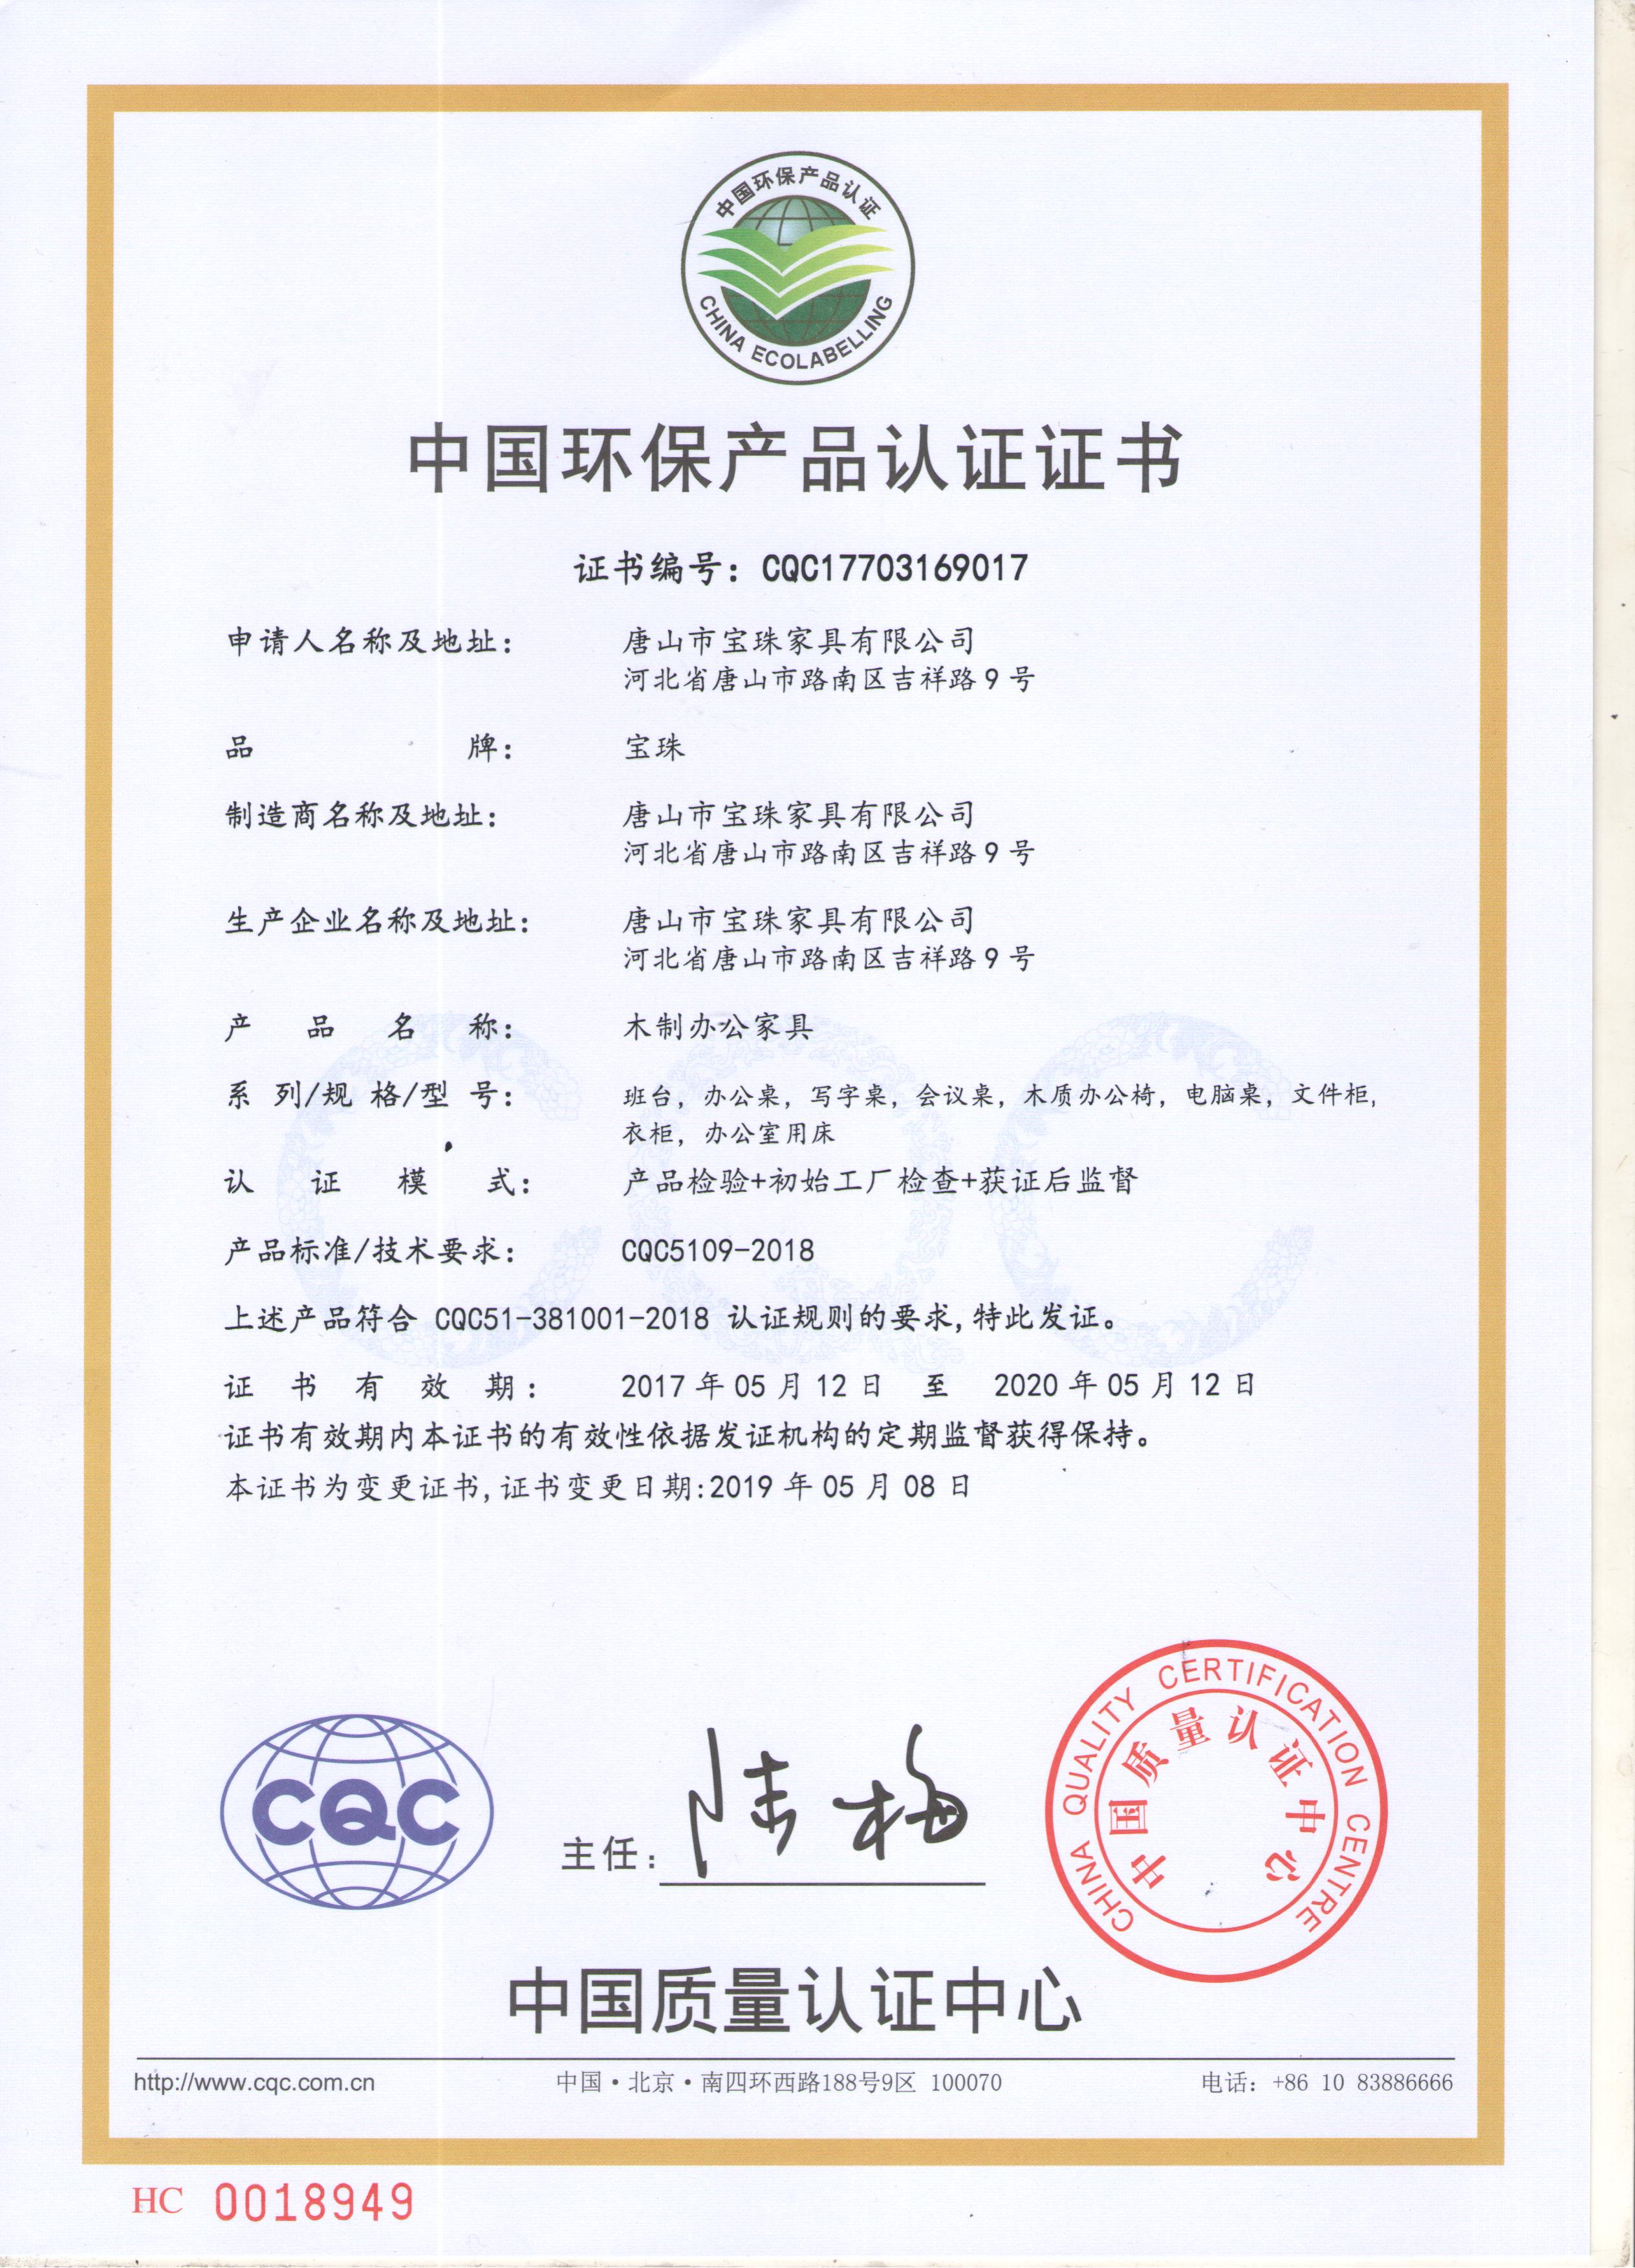 CQC中国环保产品认证证书-中文